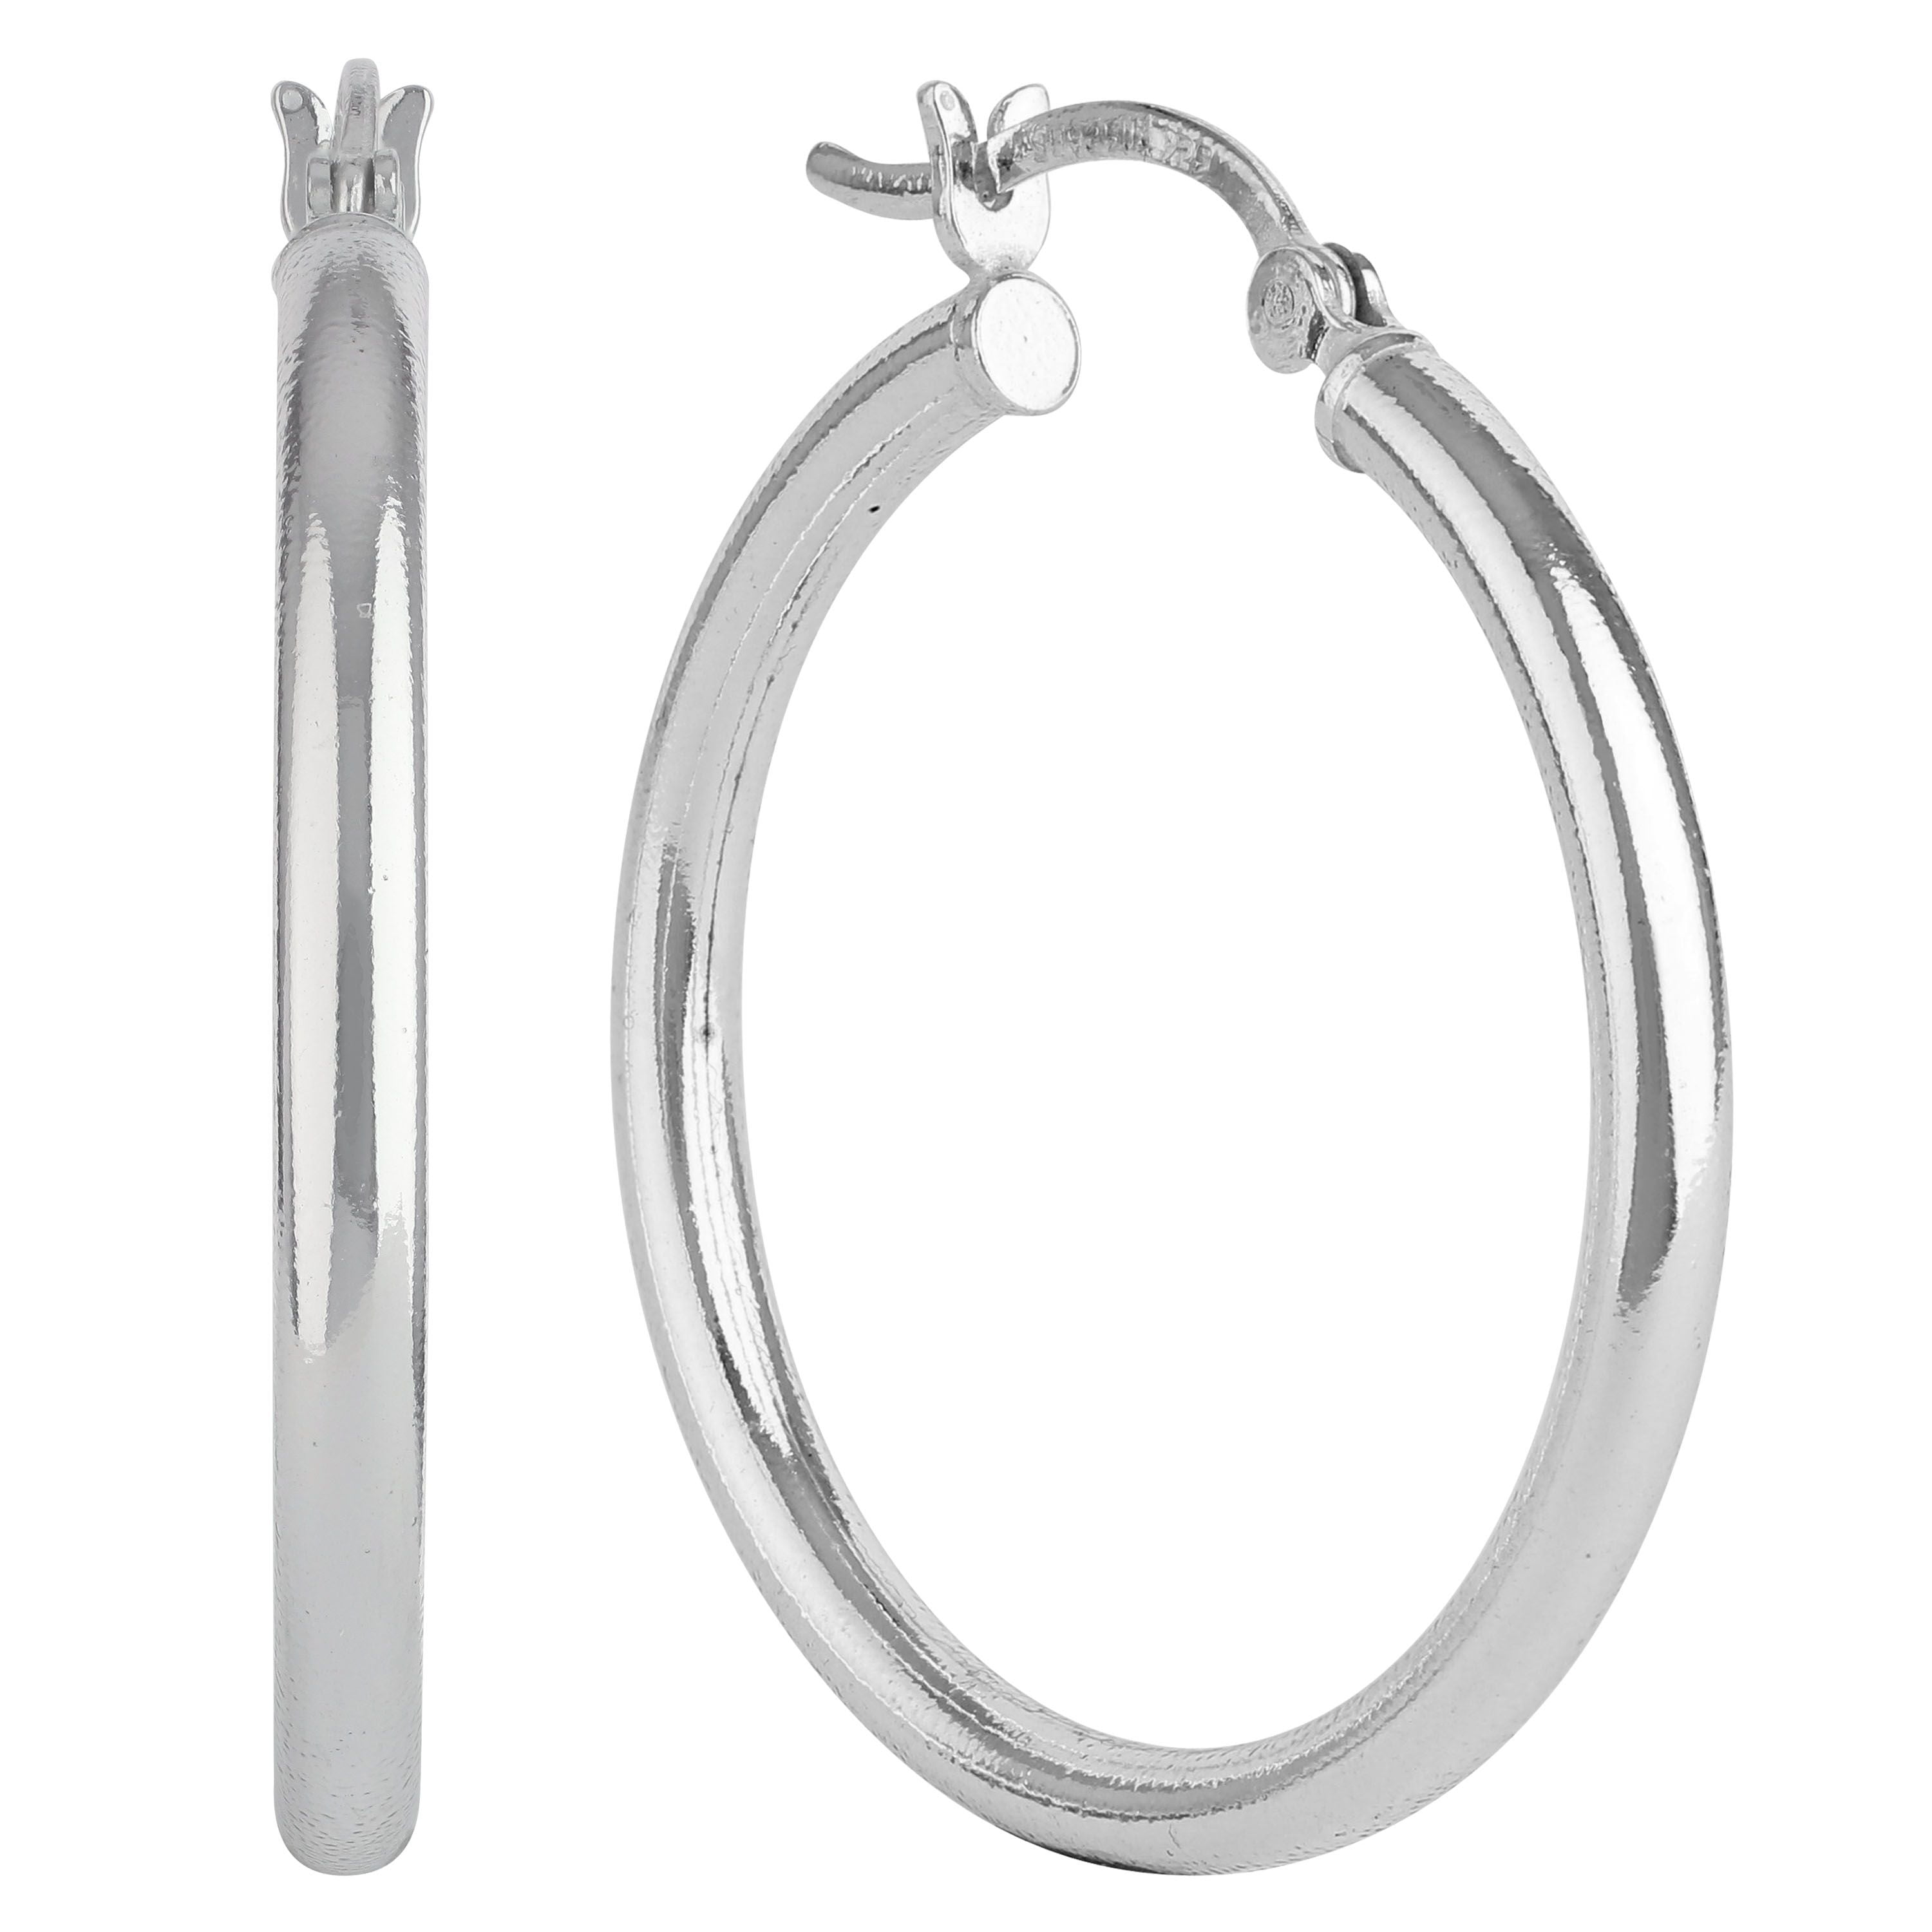 August Forever Silver Austrian Crystal Birthstone 15mm Full Hoop Earrings Surgical Steel Posts